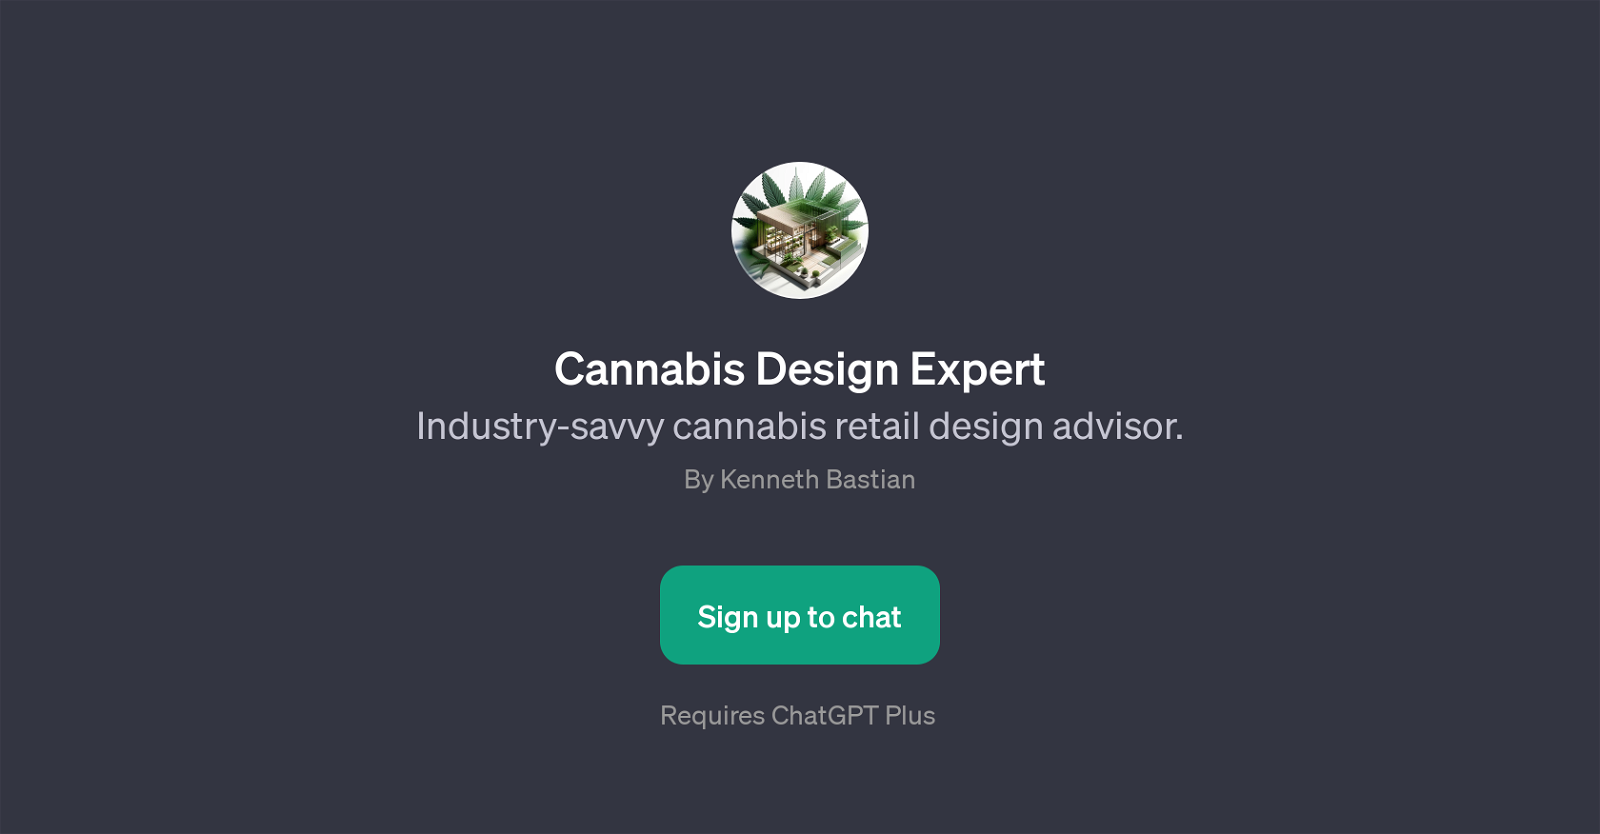 Cannabis Design Expert website